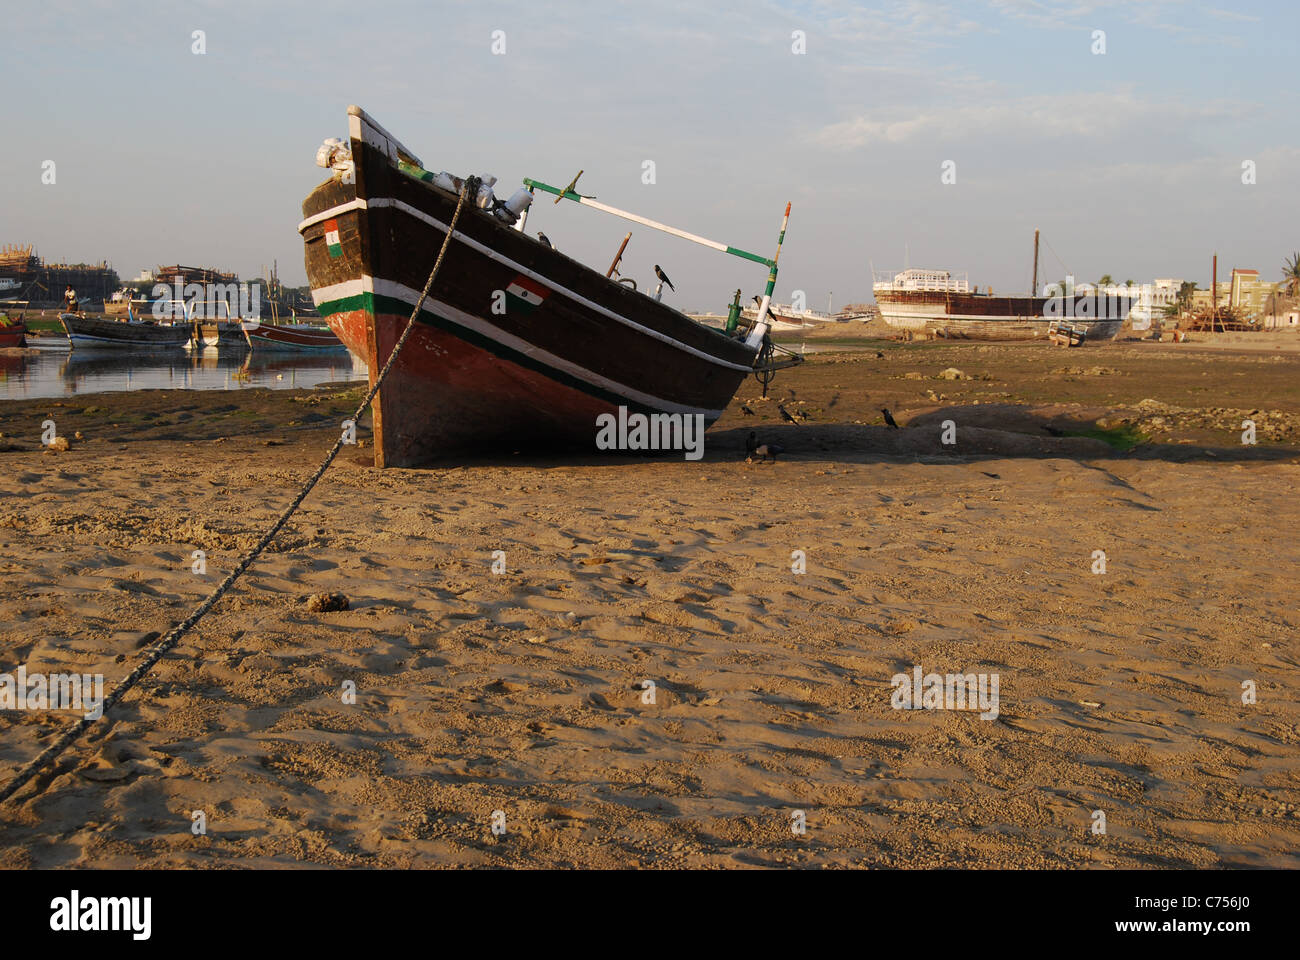 Un bateau est amarré sur la rive. Dans l'arrière-plan, un autre bateau est en réparation (Inde) Banque D'Images